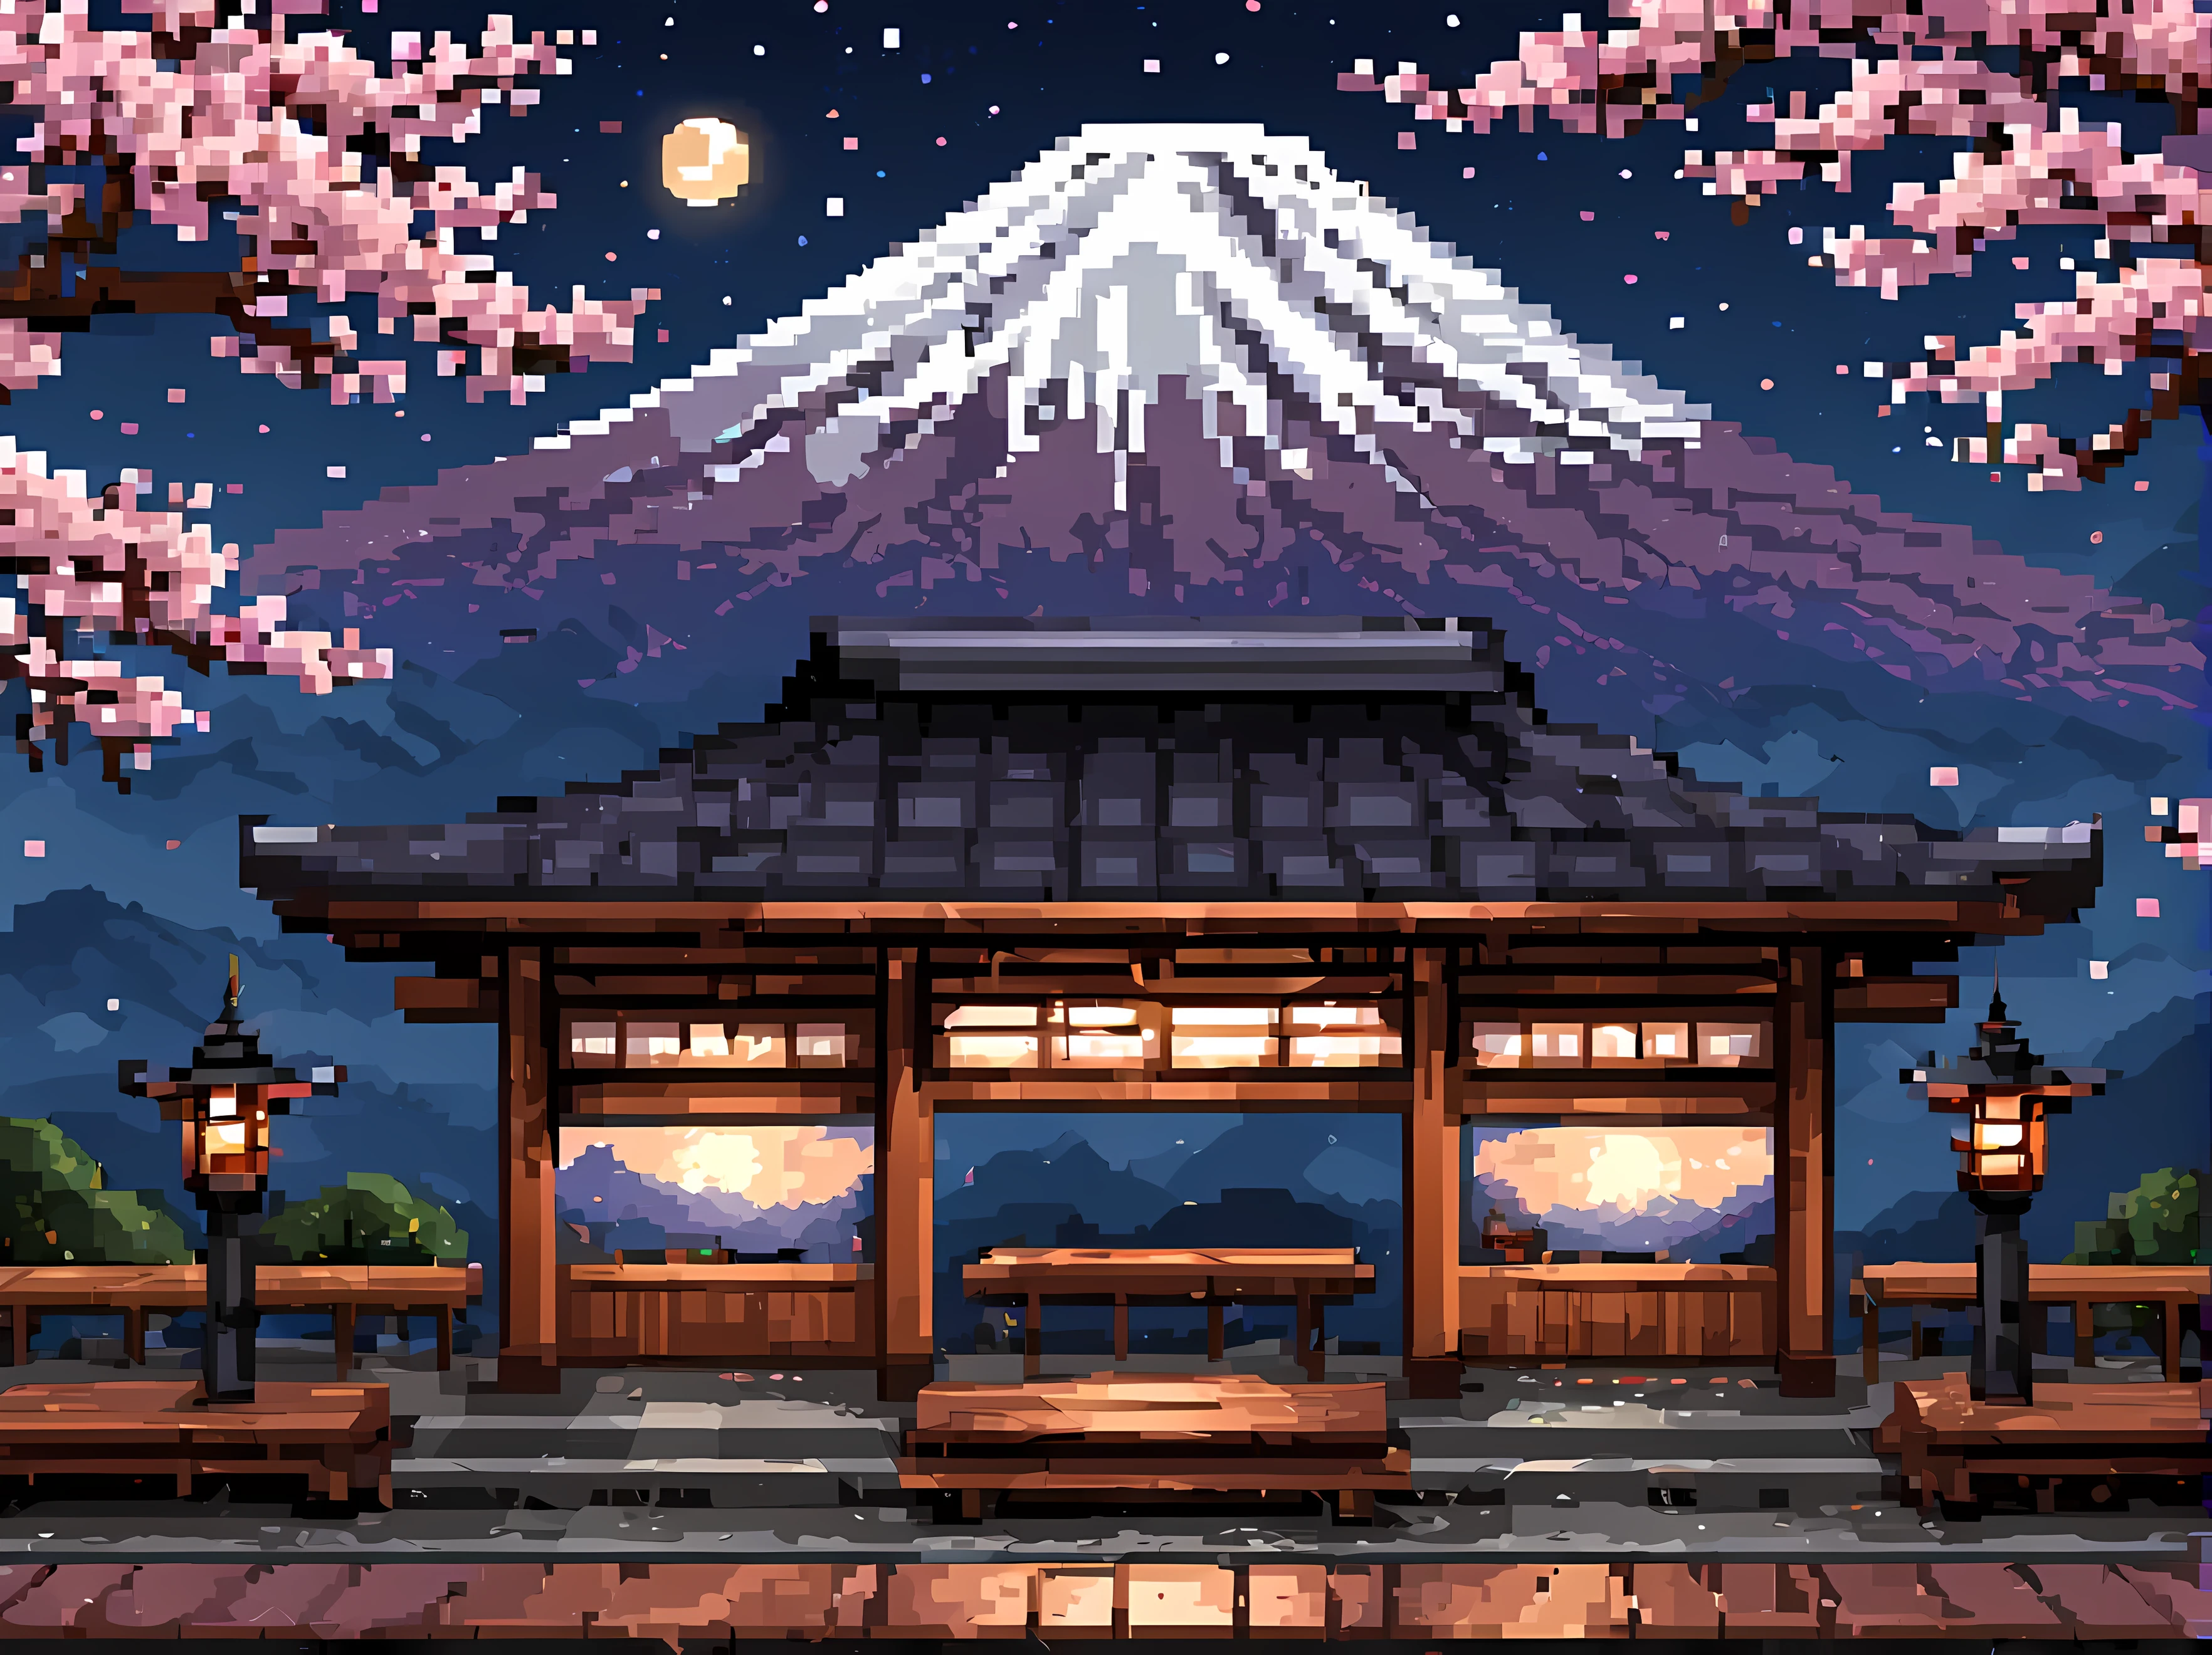 arte de pixel, una escena cautivadora de una estación de tren japonesa en una noche estrellada de primavera con luna llena, rodeado de árboles de Sakura en flor, elementos tradicionales como faroles y bancos de madera, Monte Fuji en el fondo, Obra maestra en resolución máxima de 16K, Excelente calidad. | ((más_detalle))